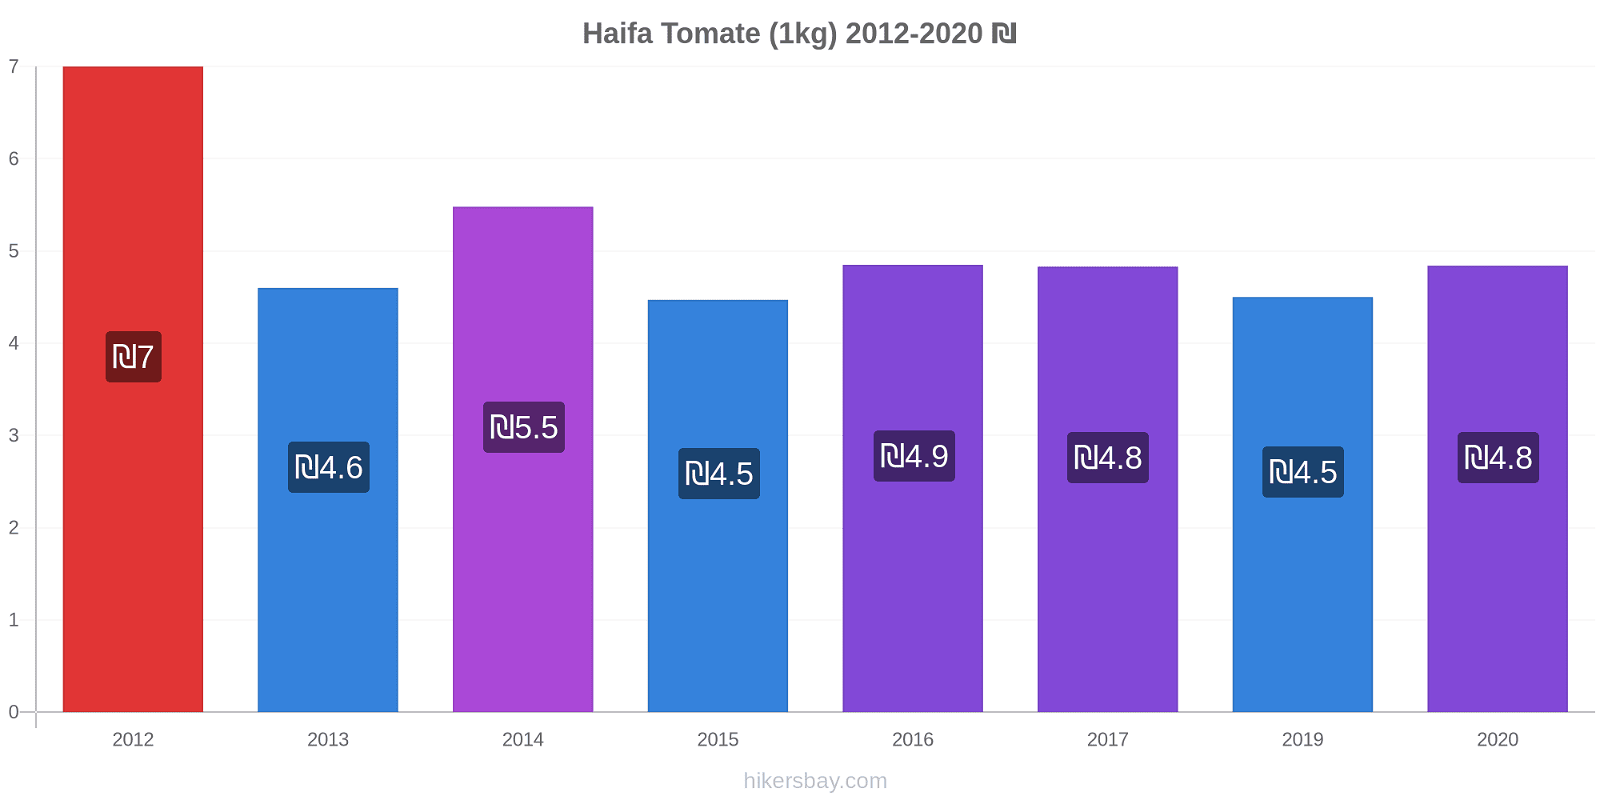 Haifa cambios de precios Tomate (1kg) hikersbay.com